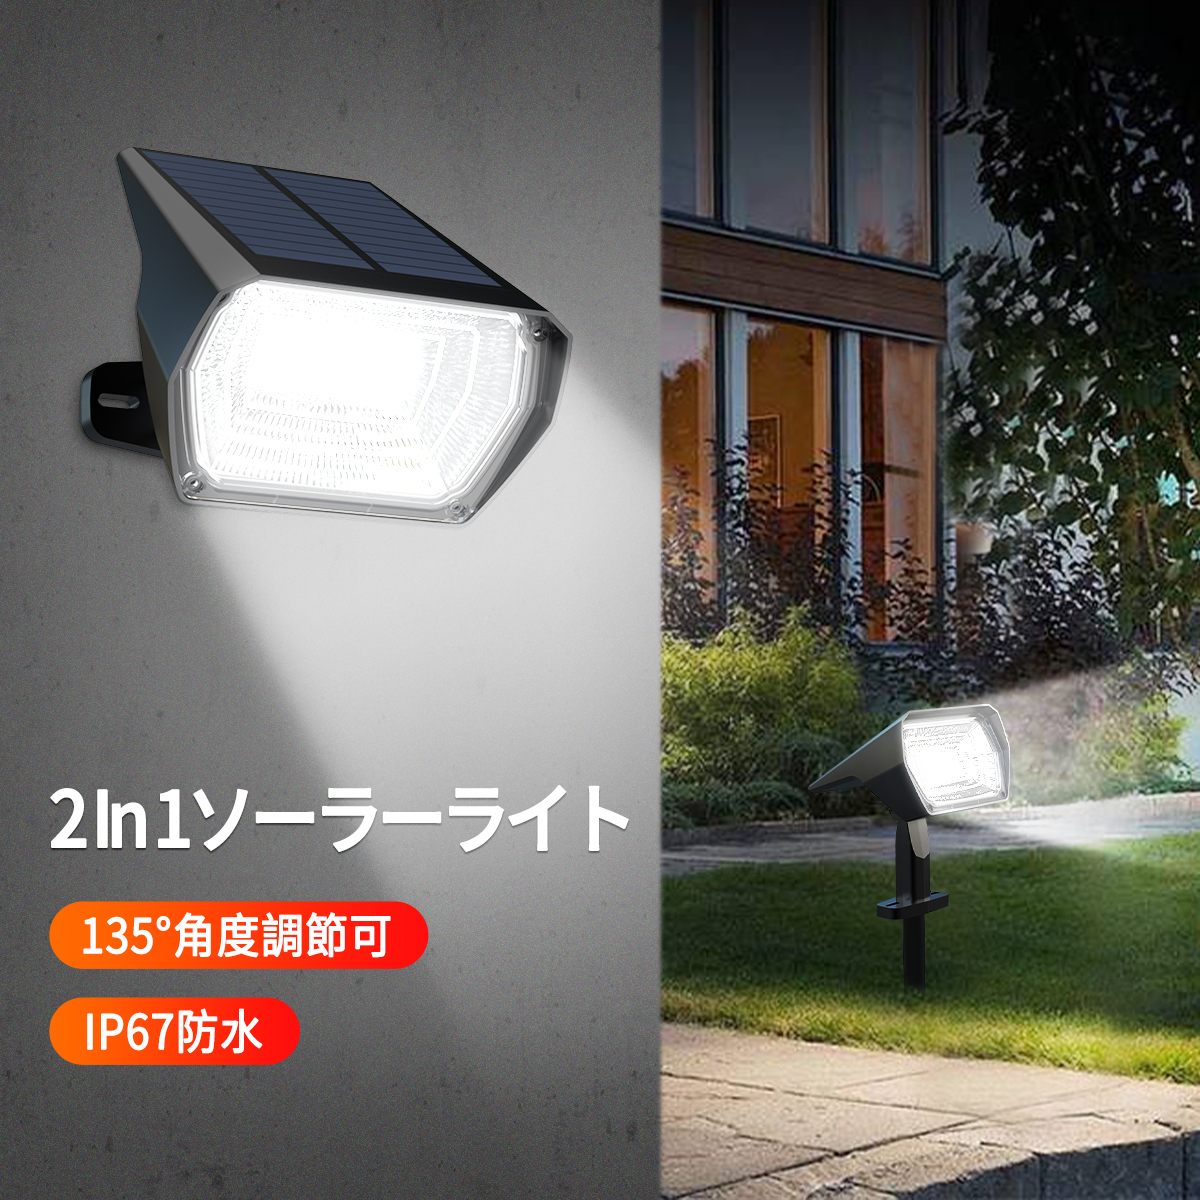 豪奢な 恵光LEDソーラーライト 街路灯 人感センサー付き 配線工事不要